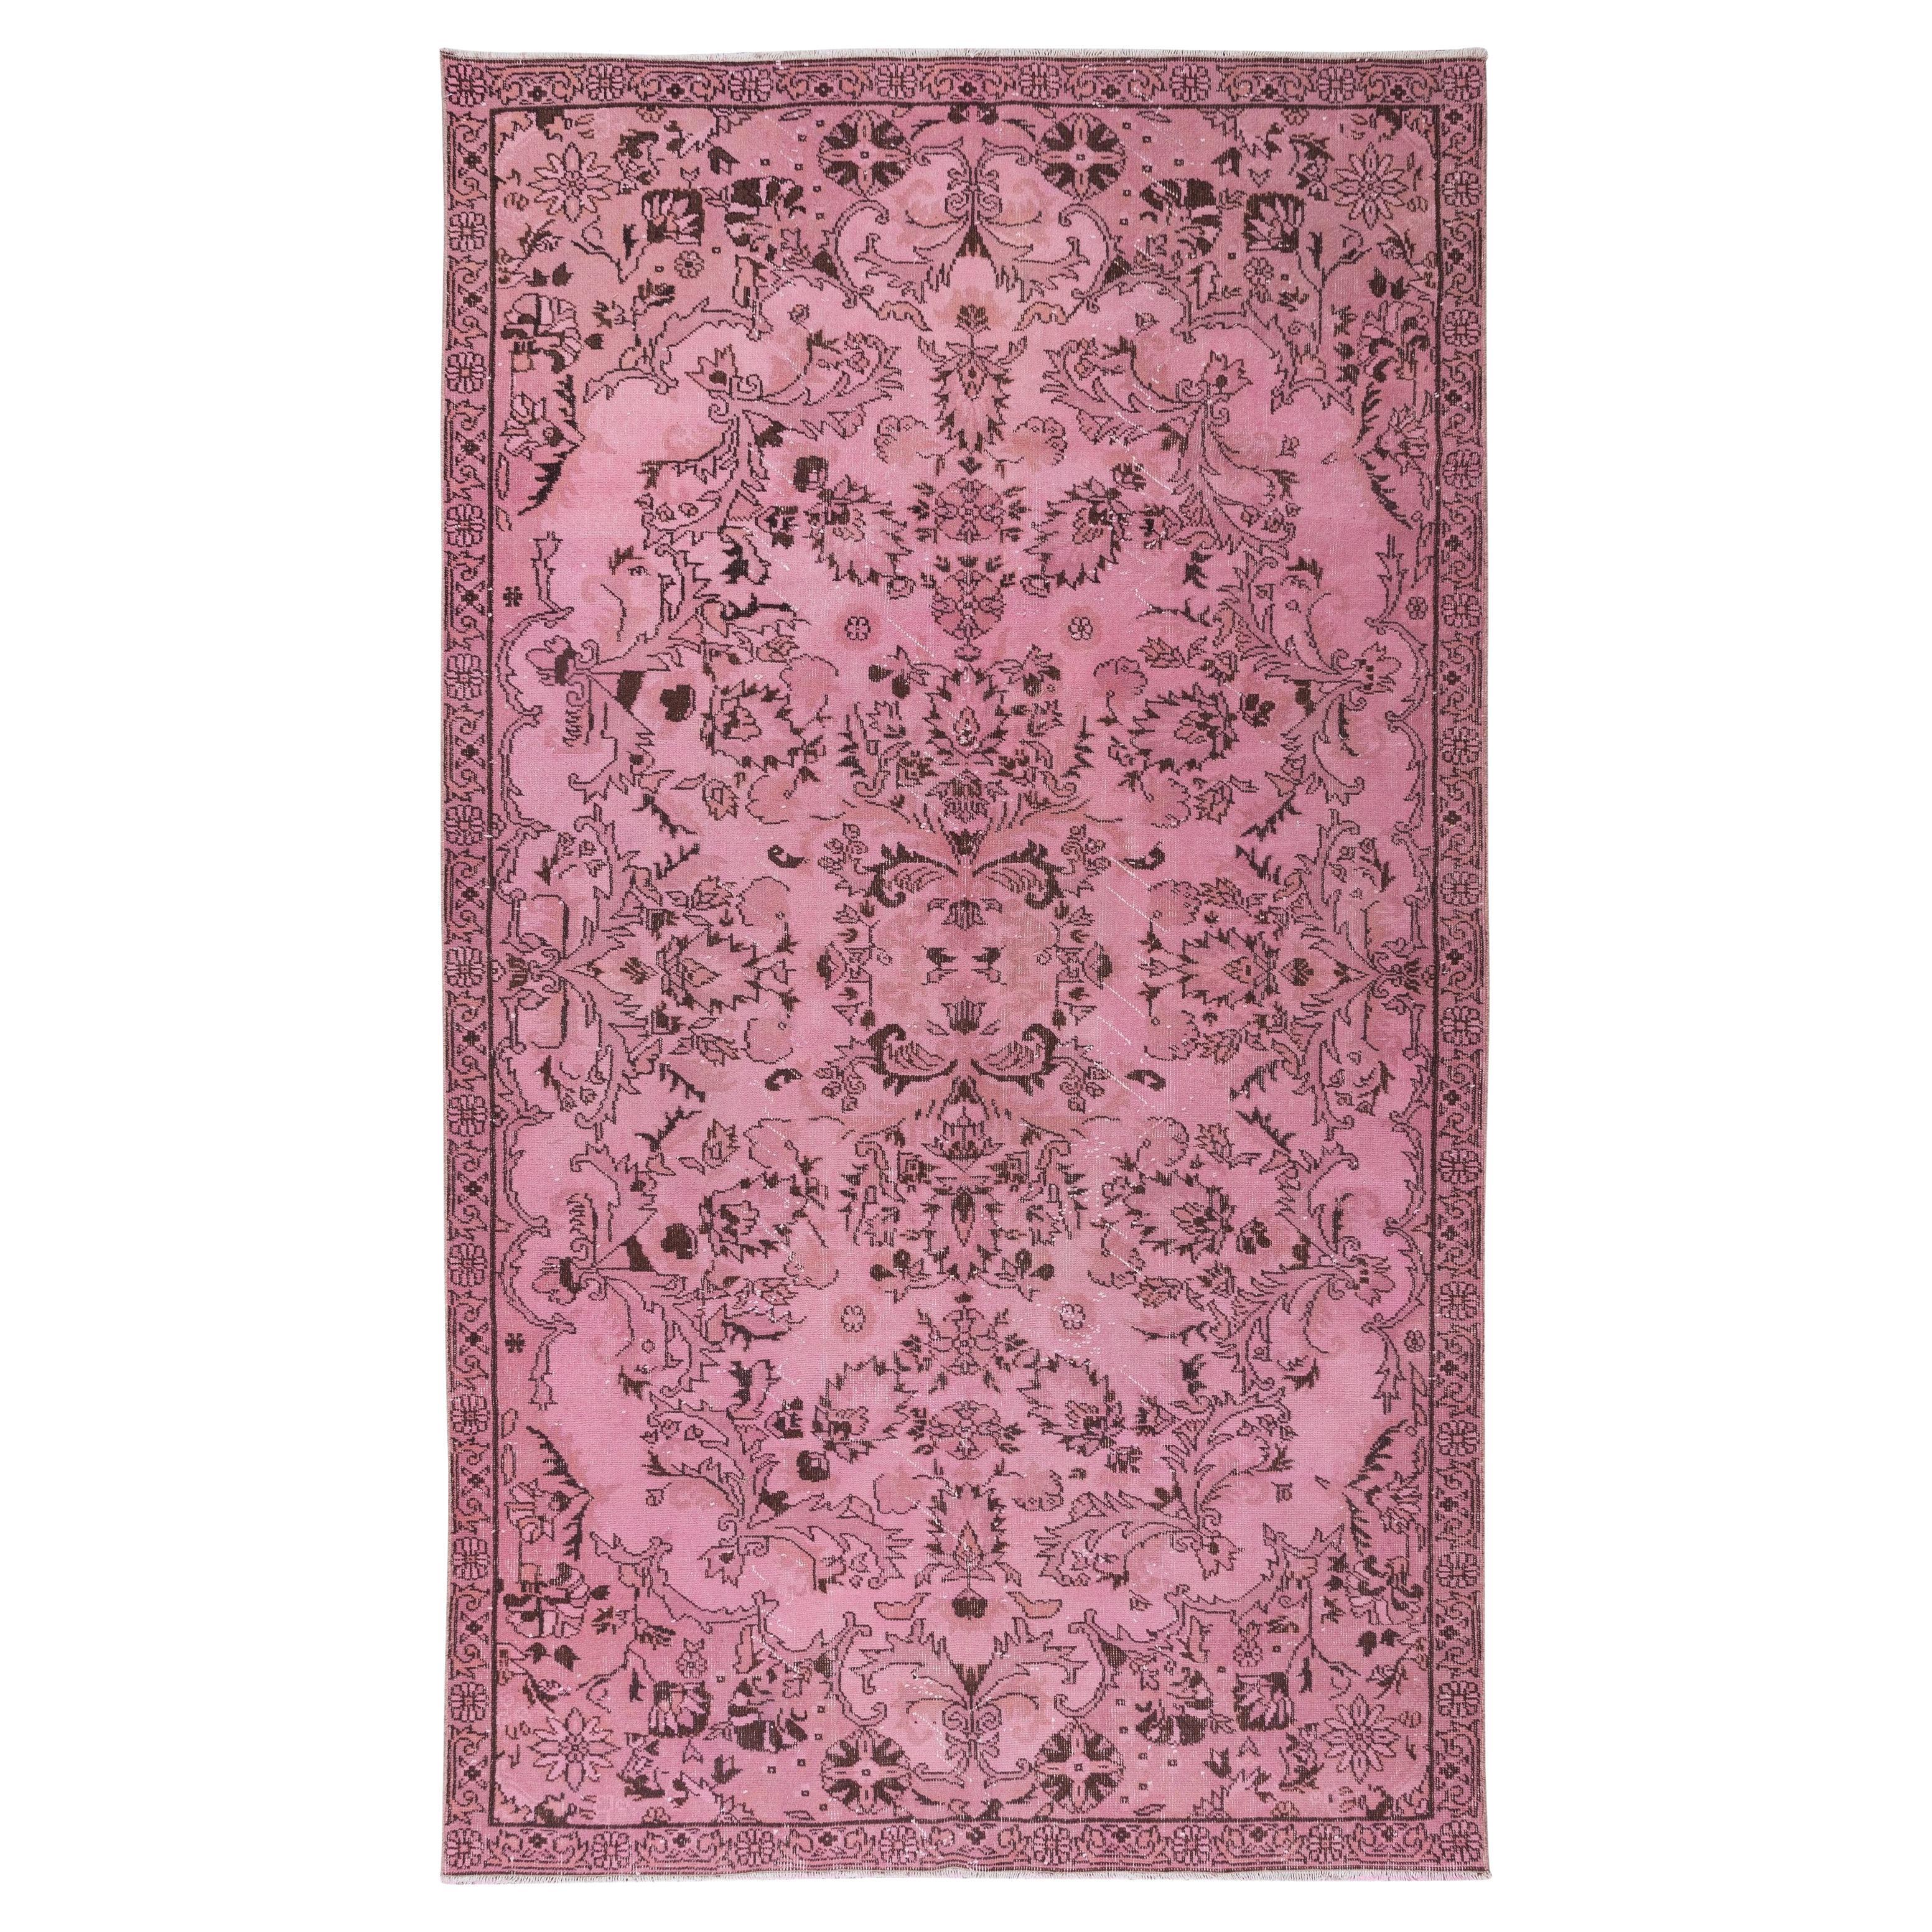 6x10.4 Ft Handgefertigter Anatolischer Vintage-Wollteppich in Rosa mit Blumen-Garten-Design